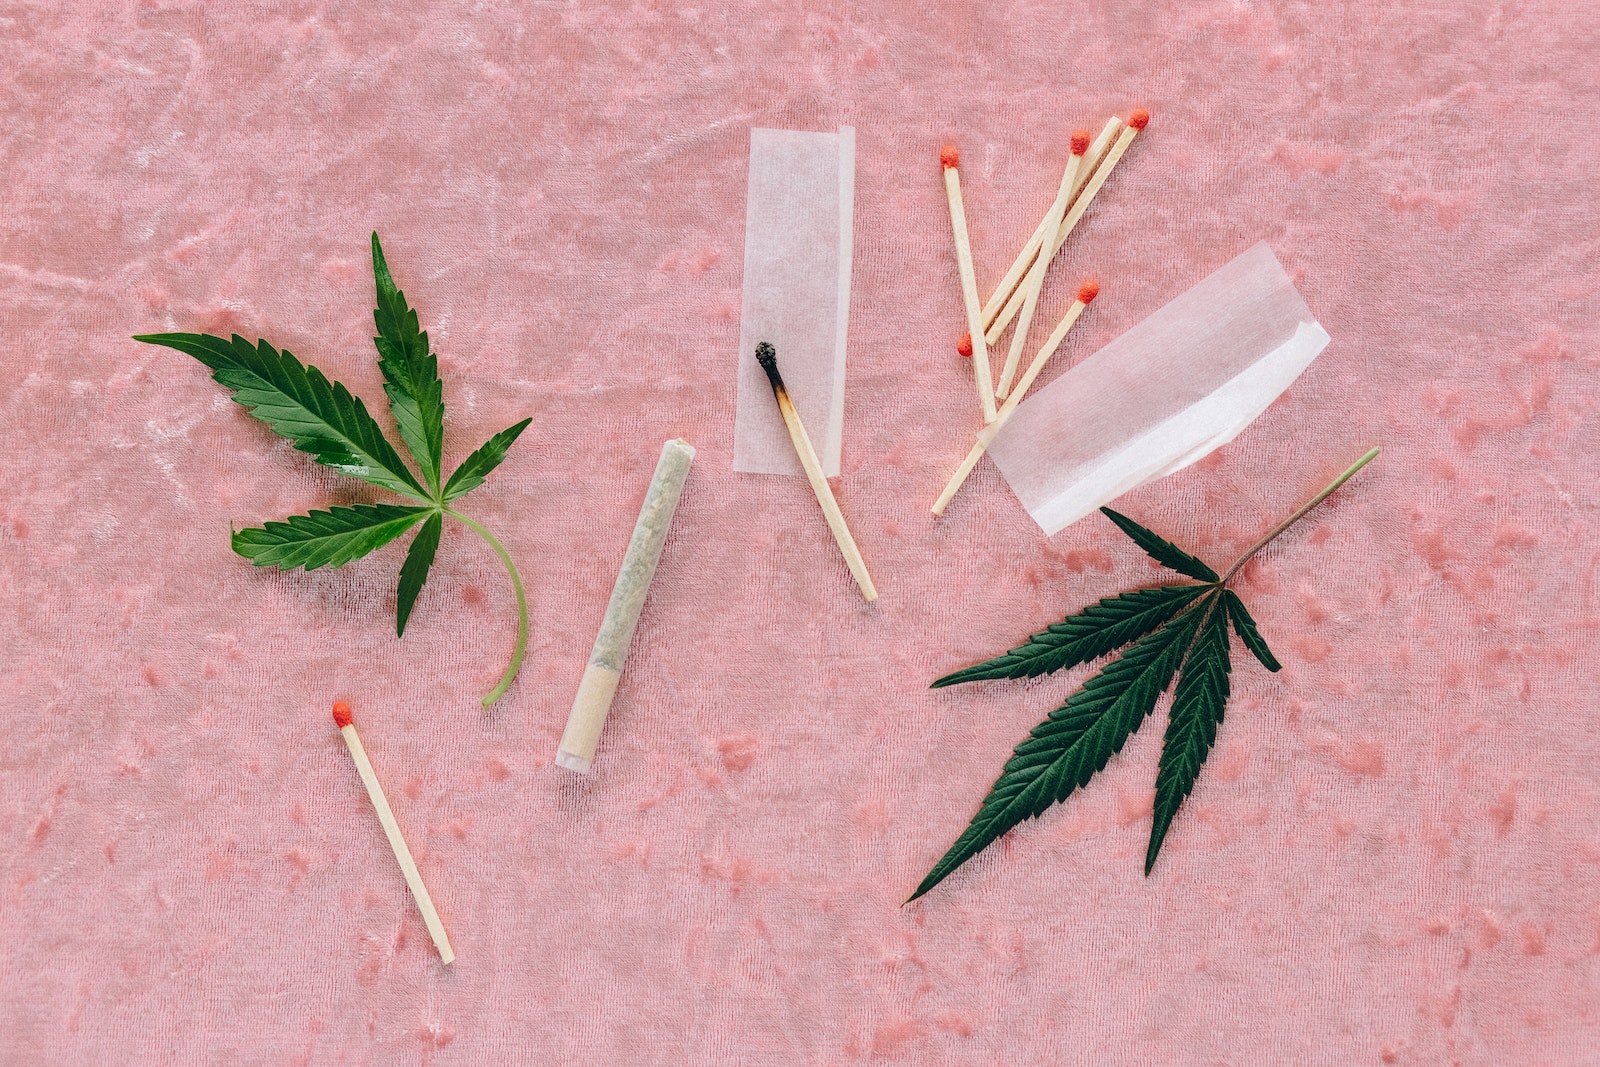 Matches and Marijuana